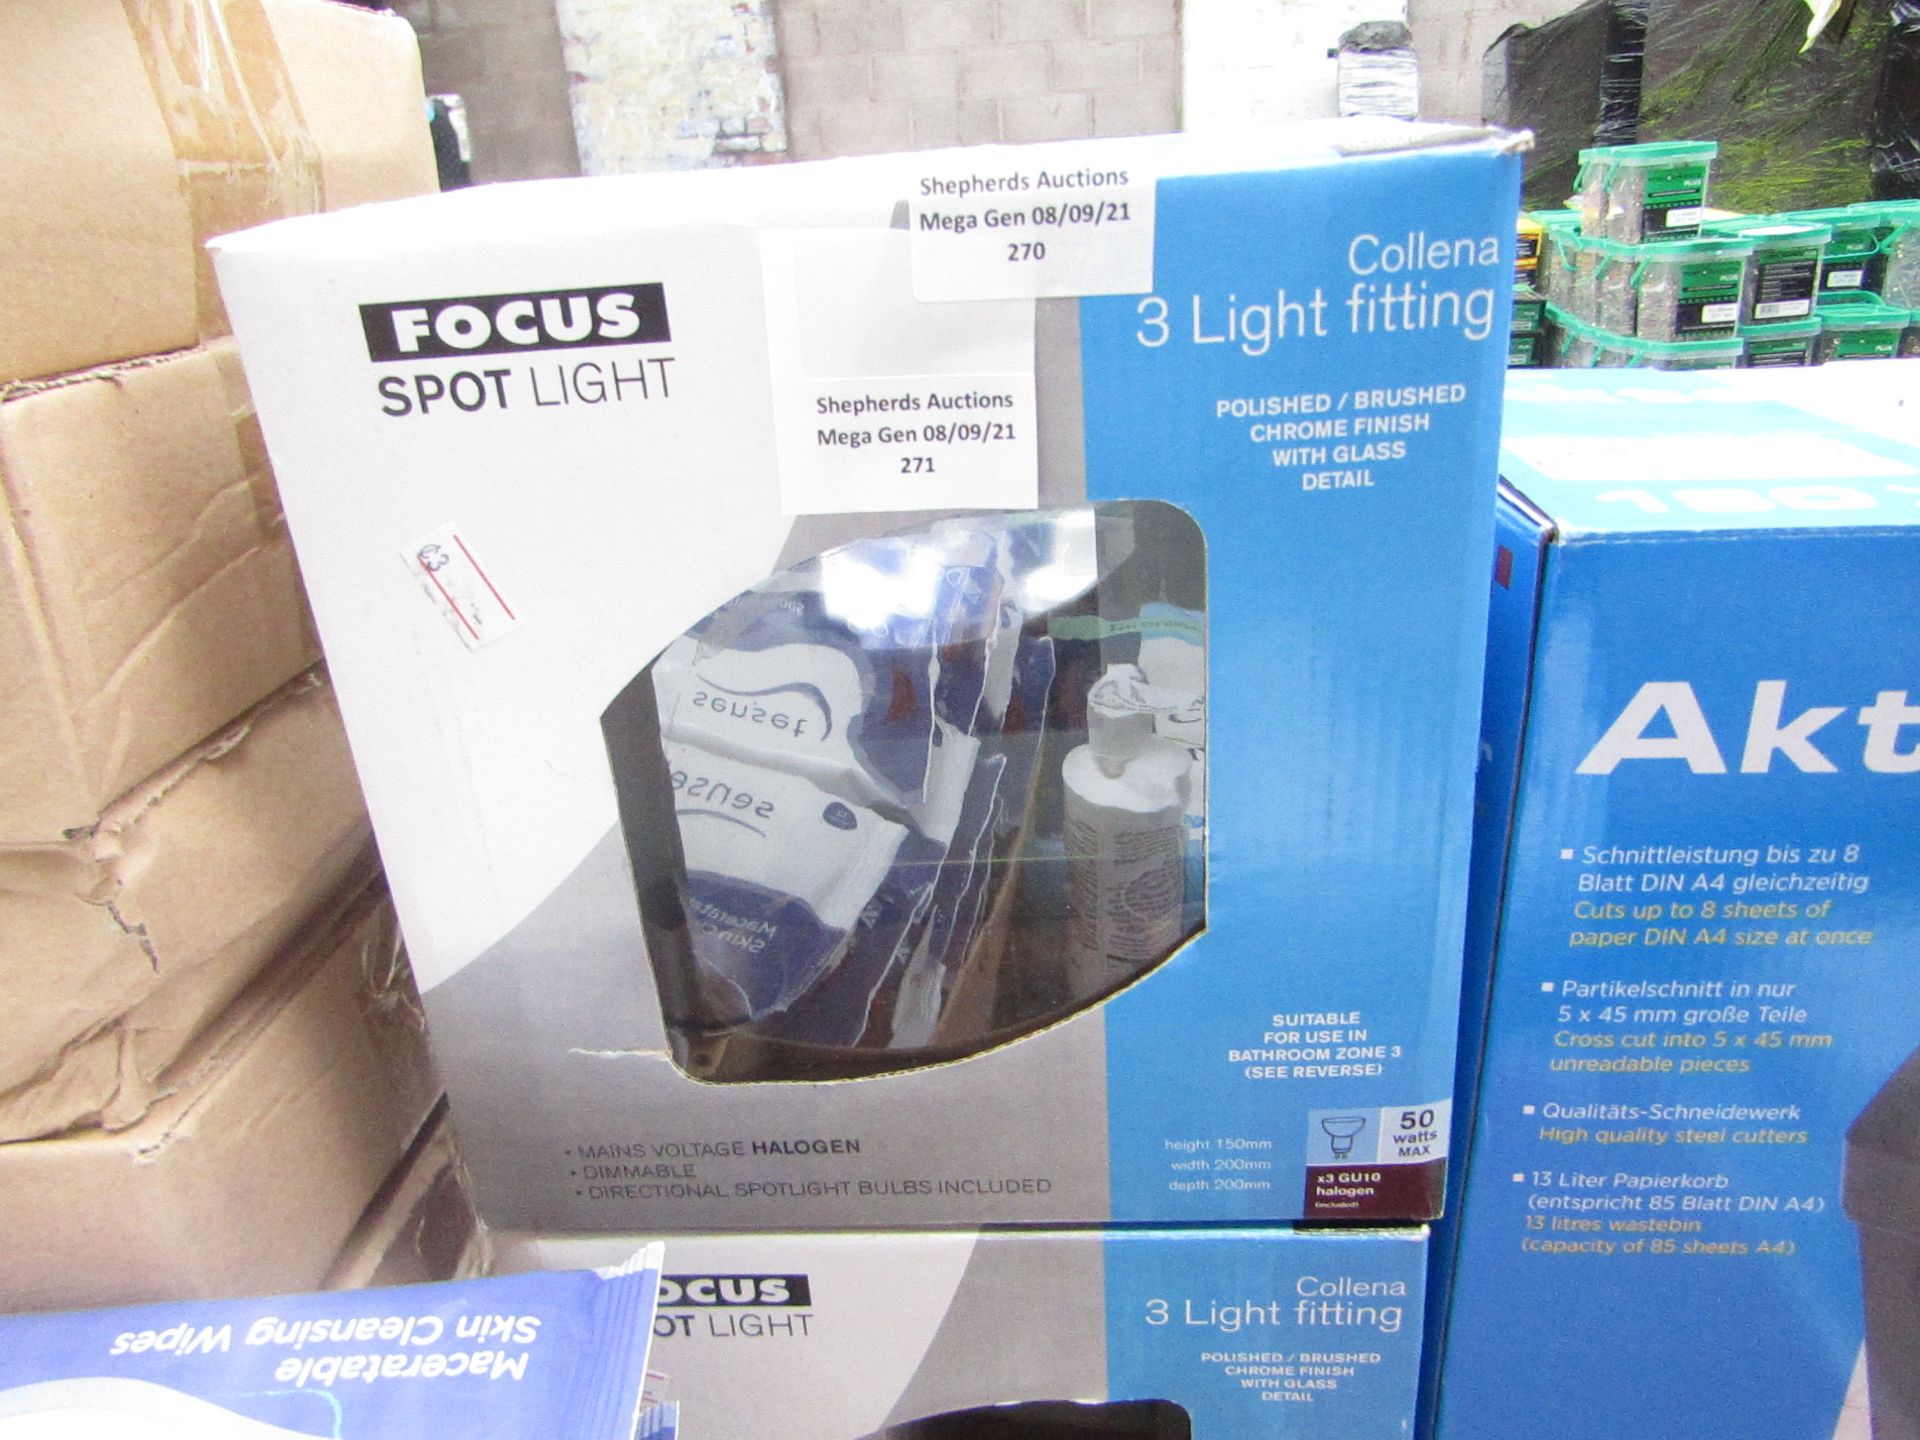 1x Focus spotlight - 3 light fittings - looks to be unused.